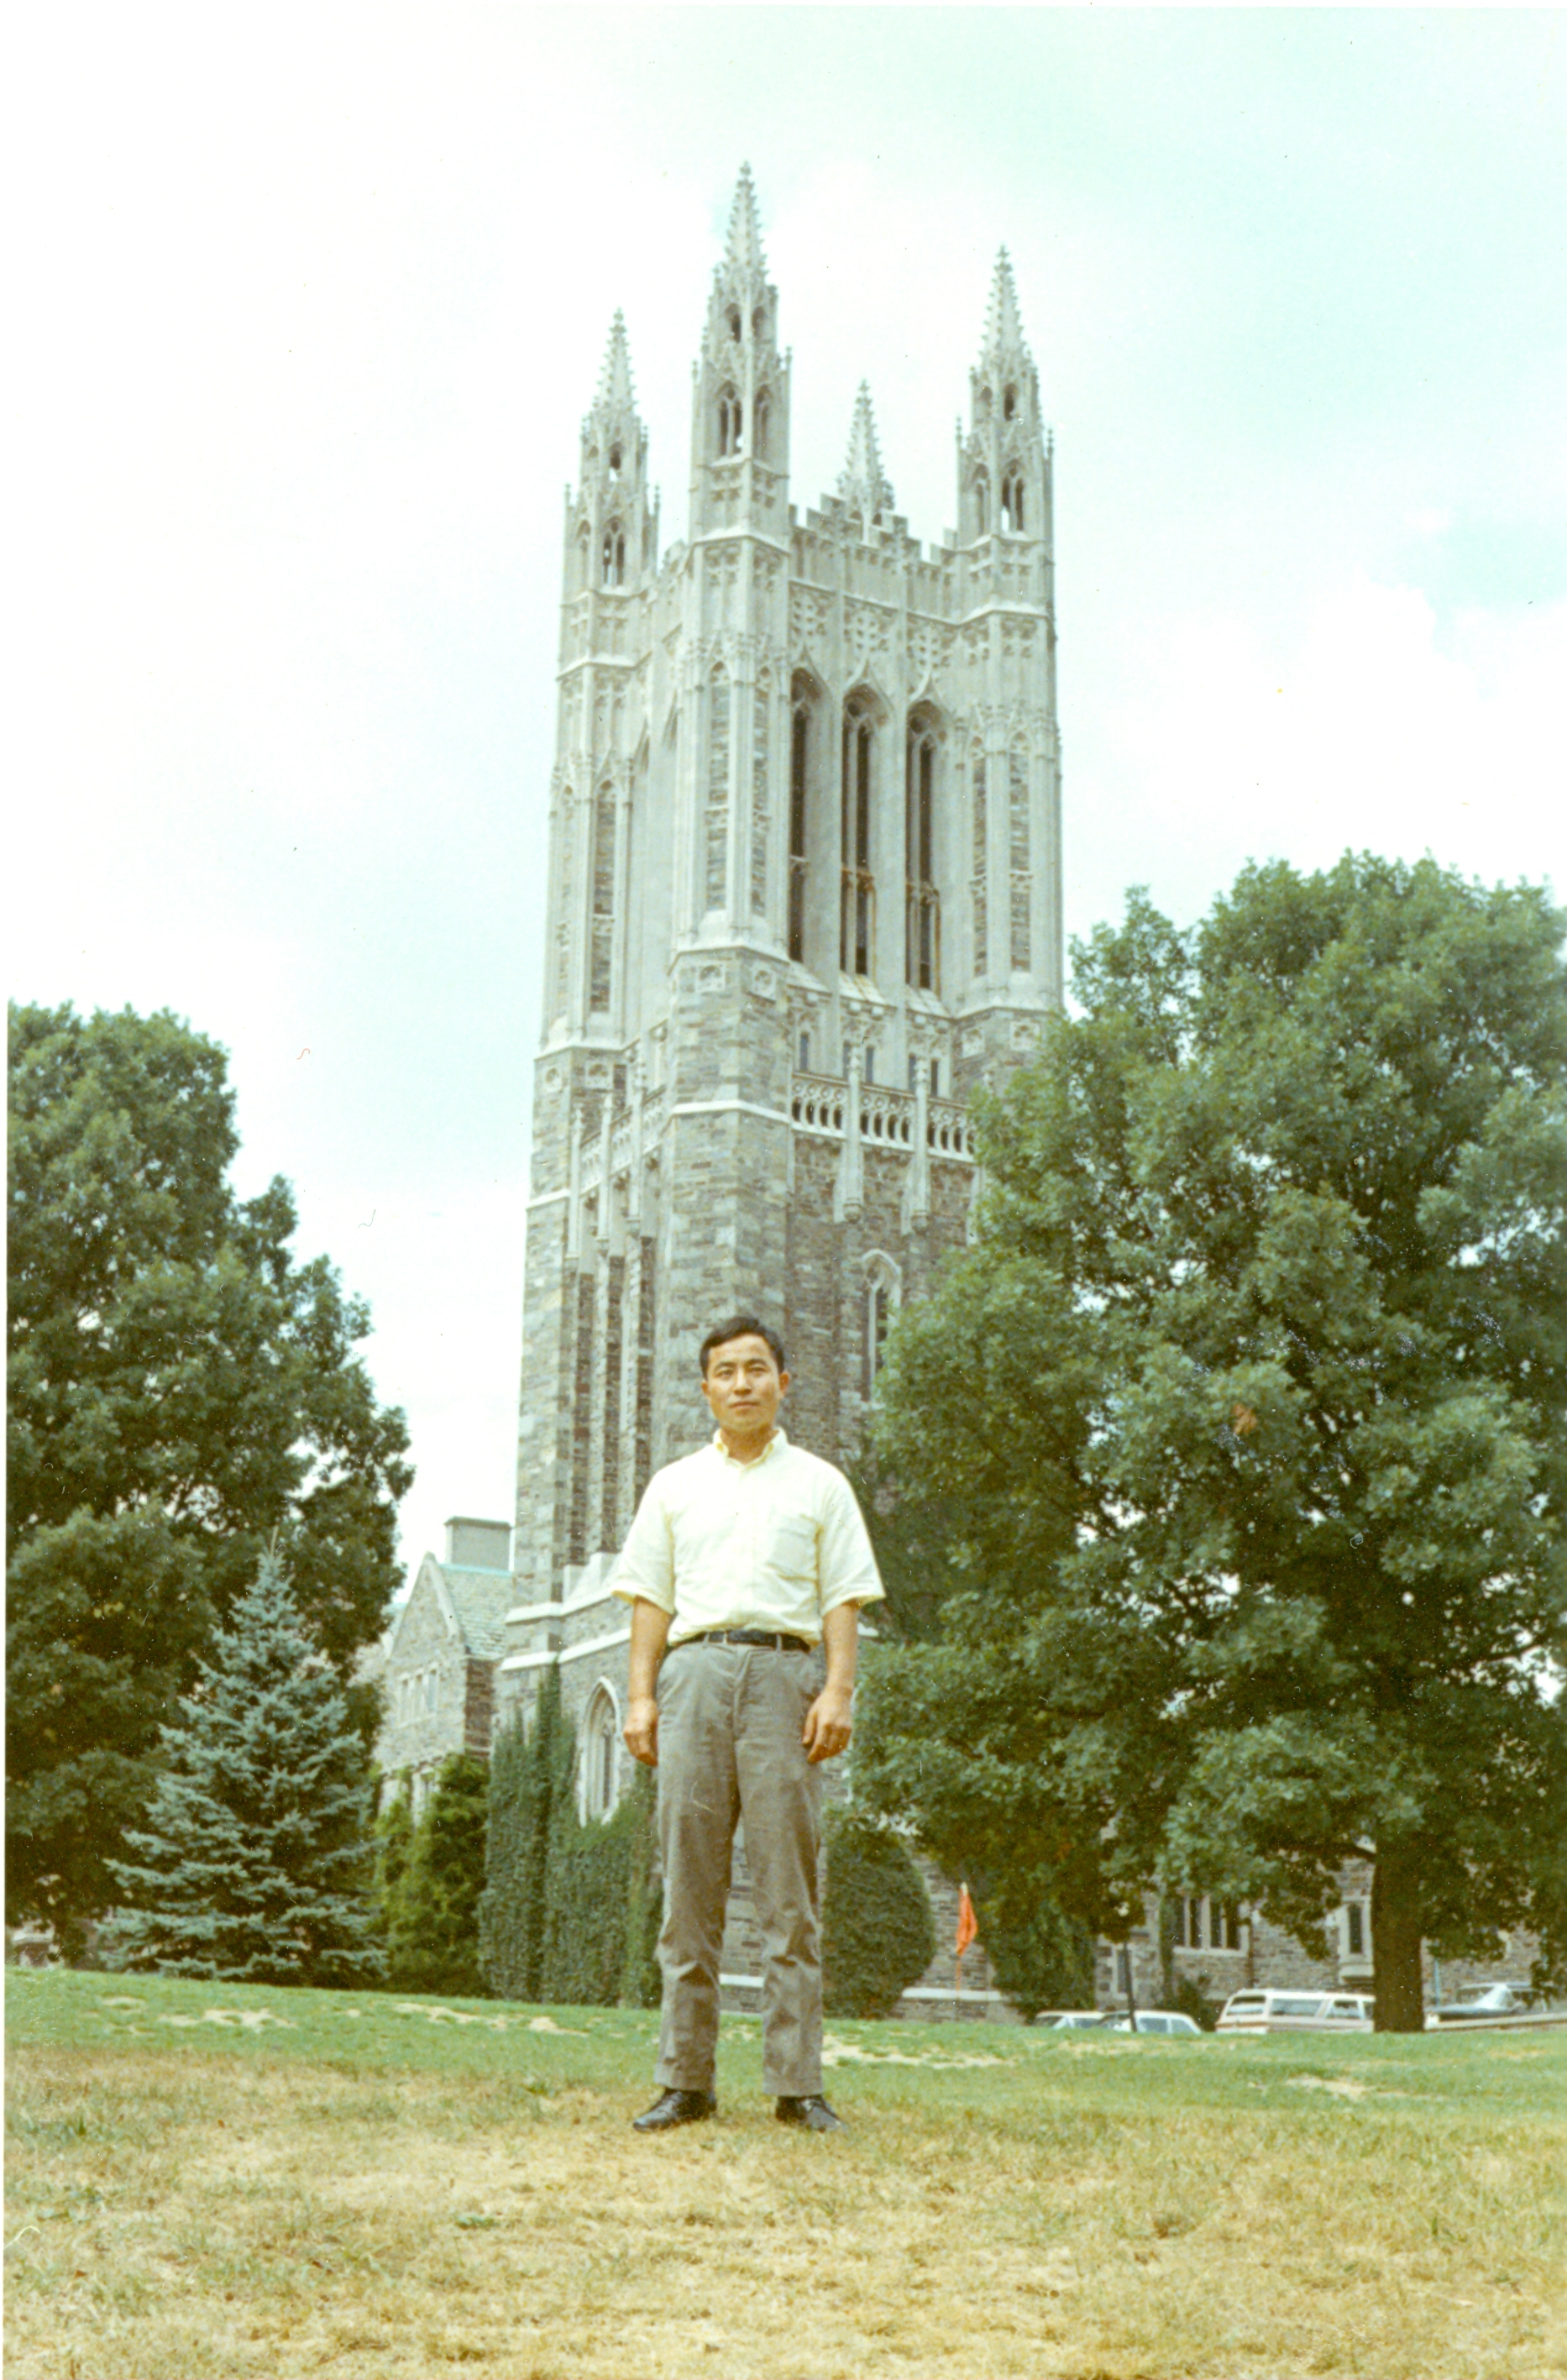 At Princeton University, 1968